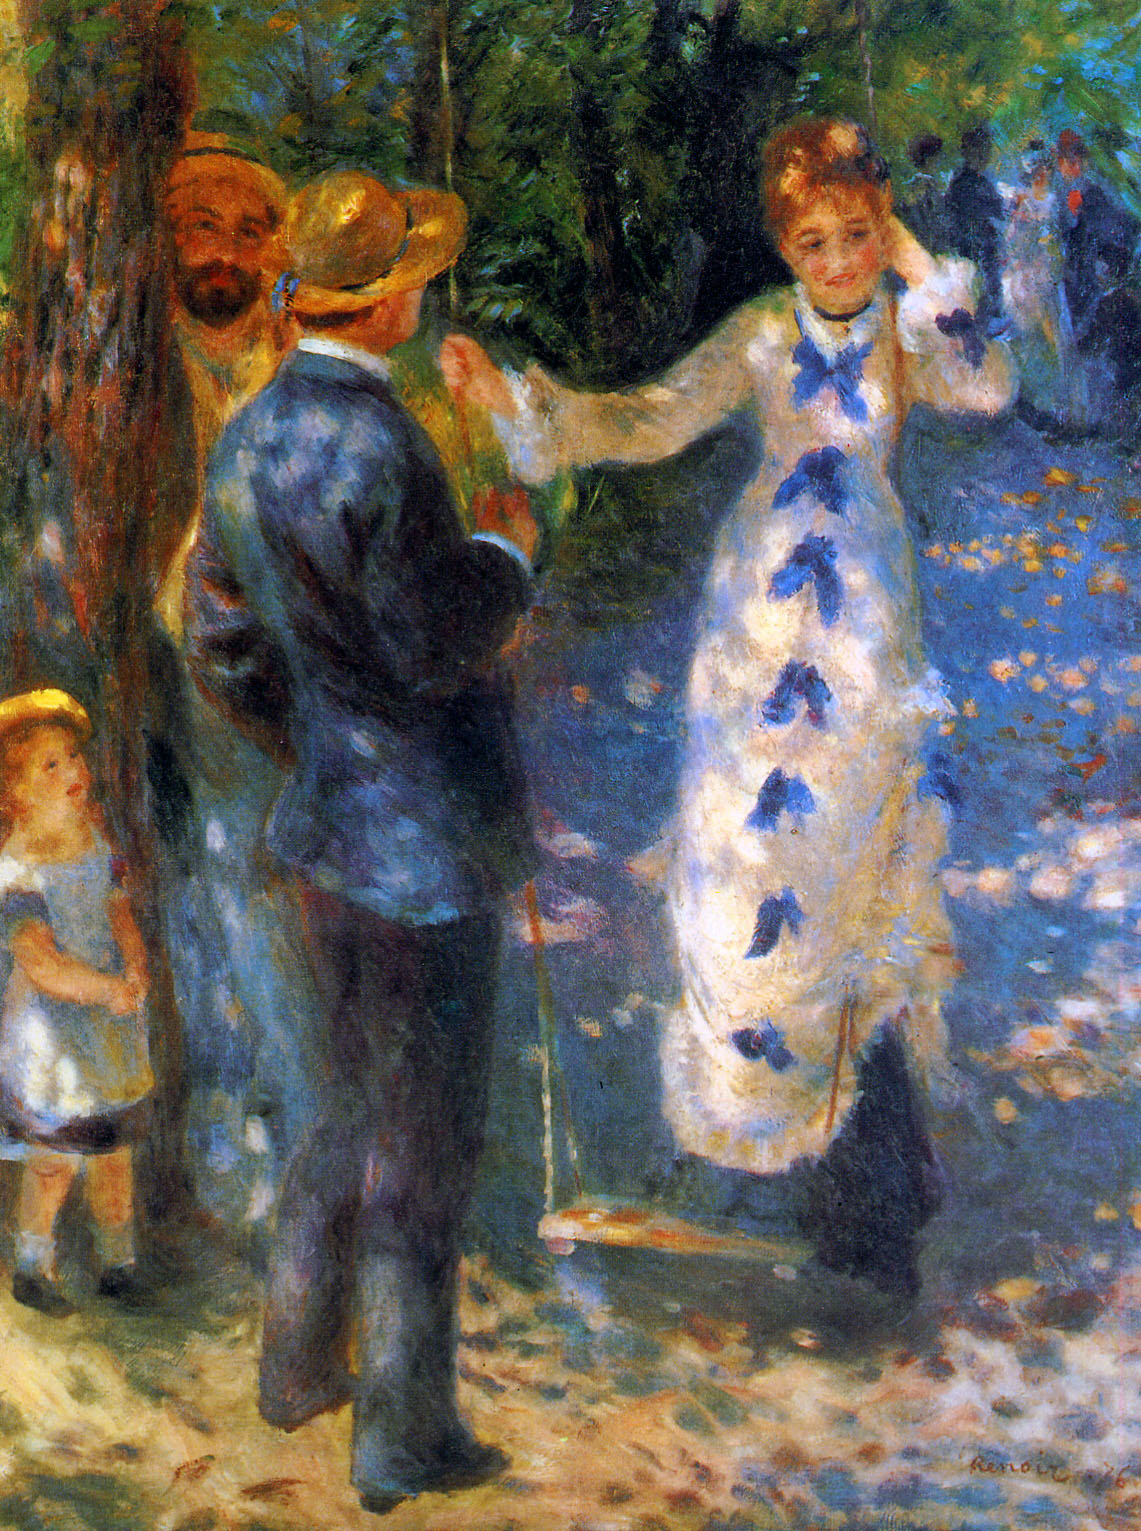 The Swing (La Balancoire) - Pierre-Auguste Renoir painting on canvas